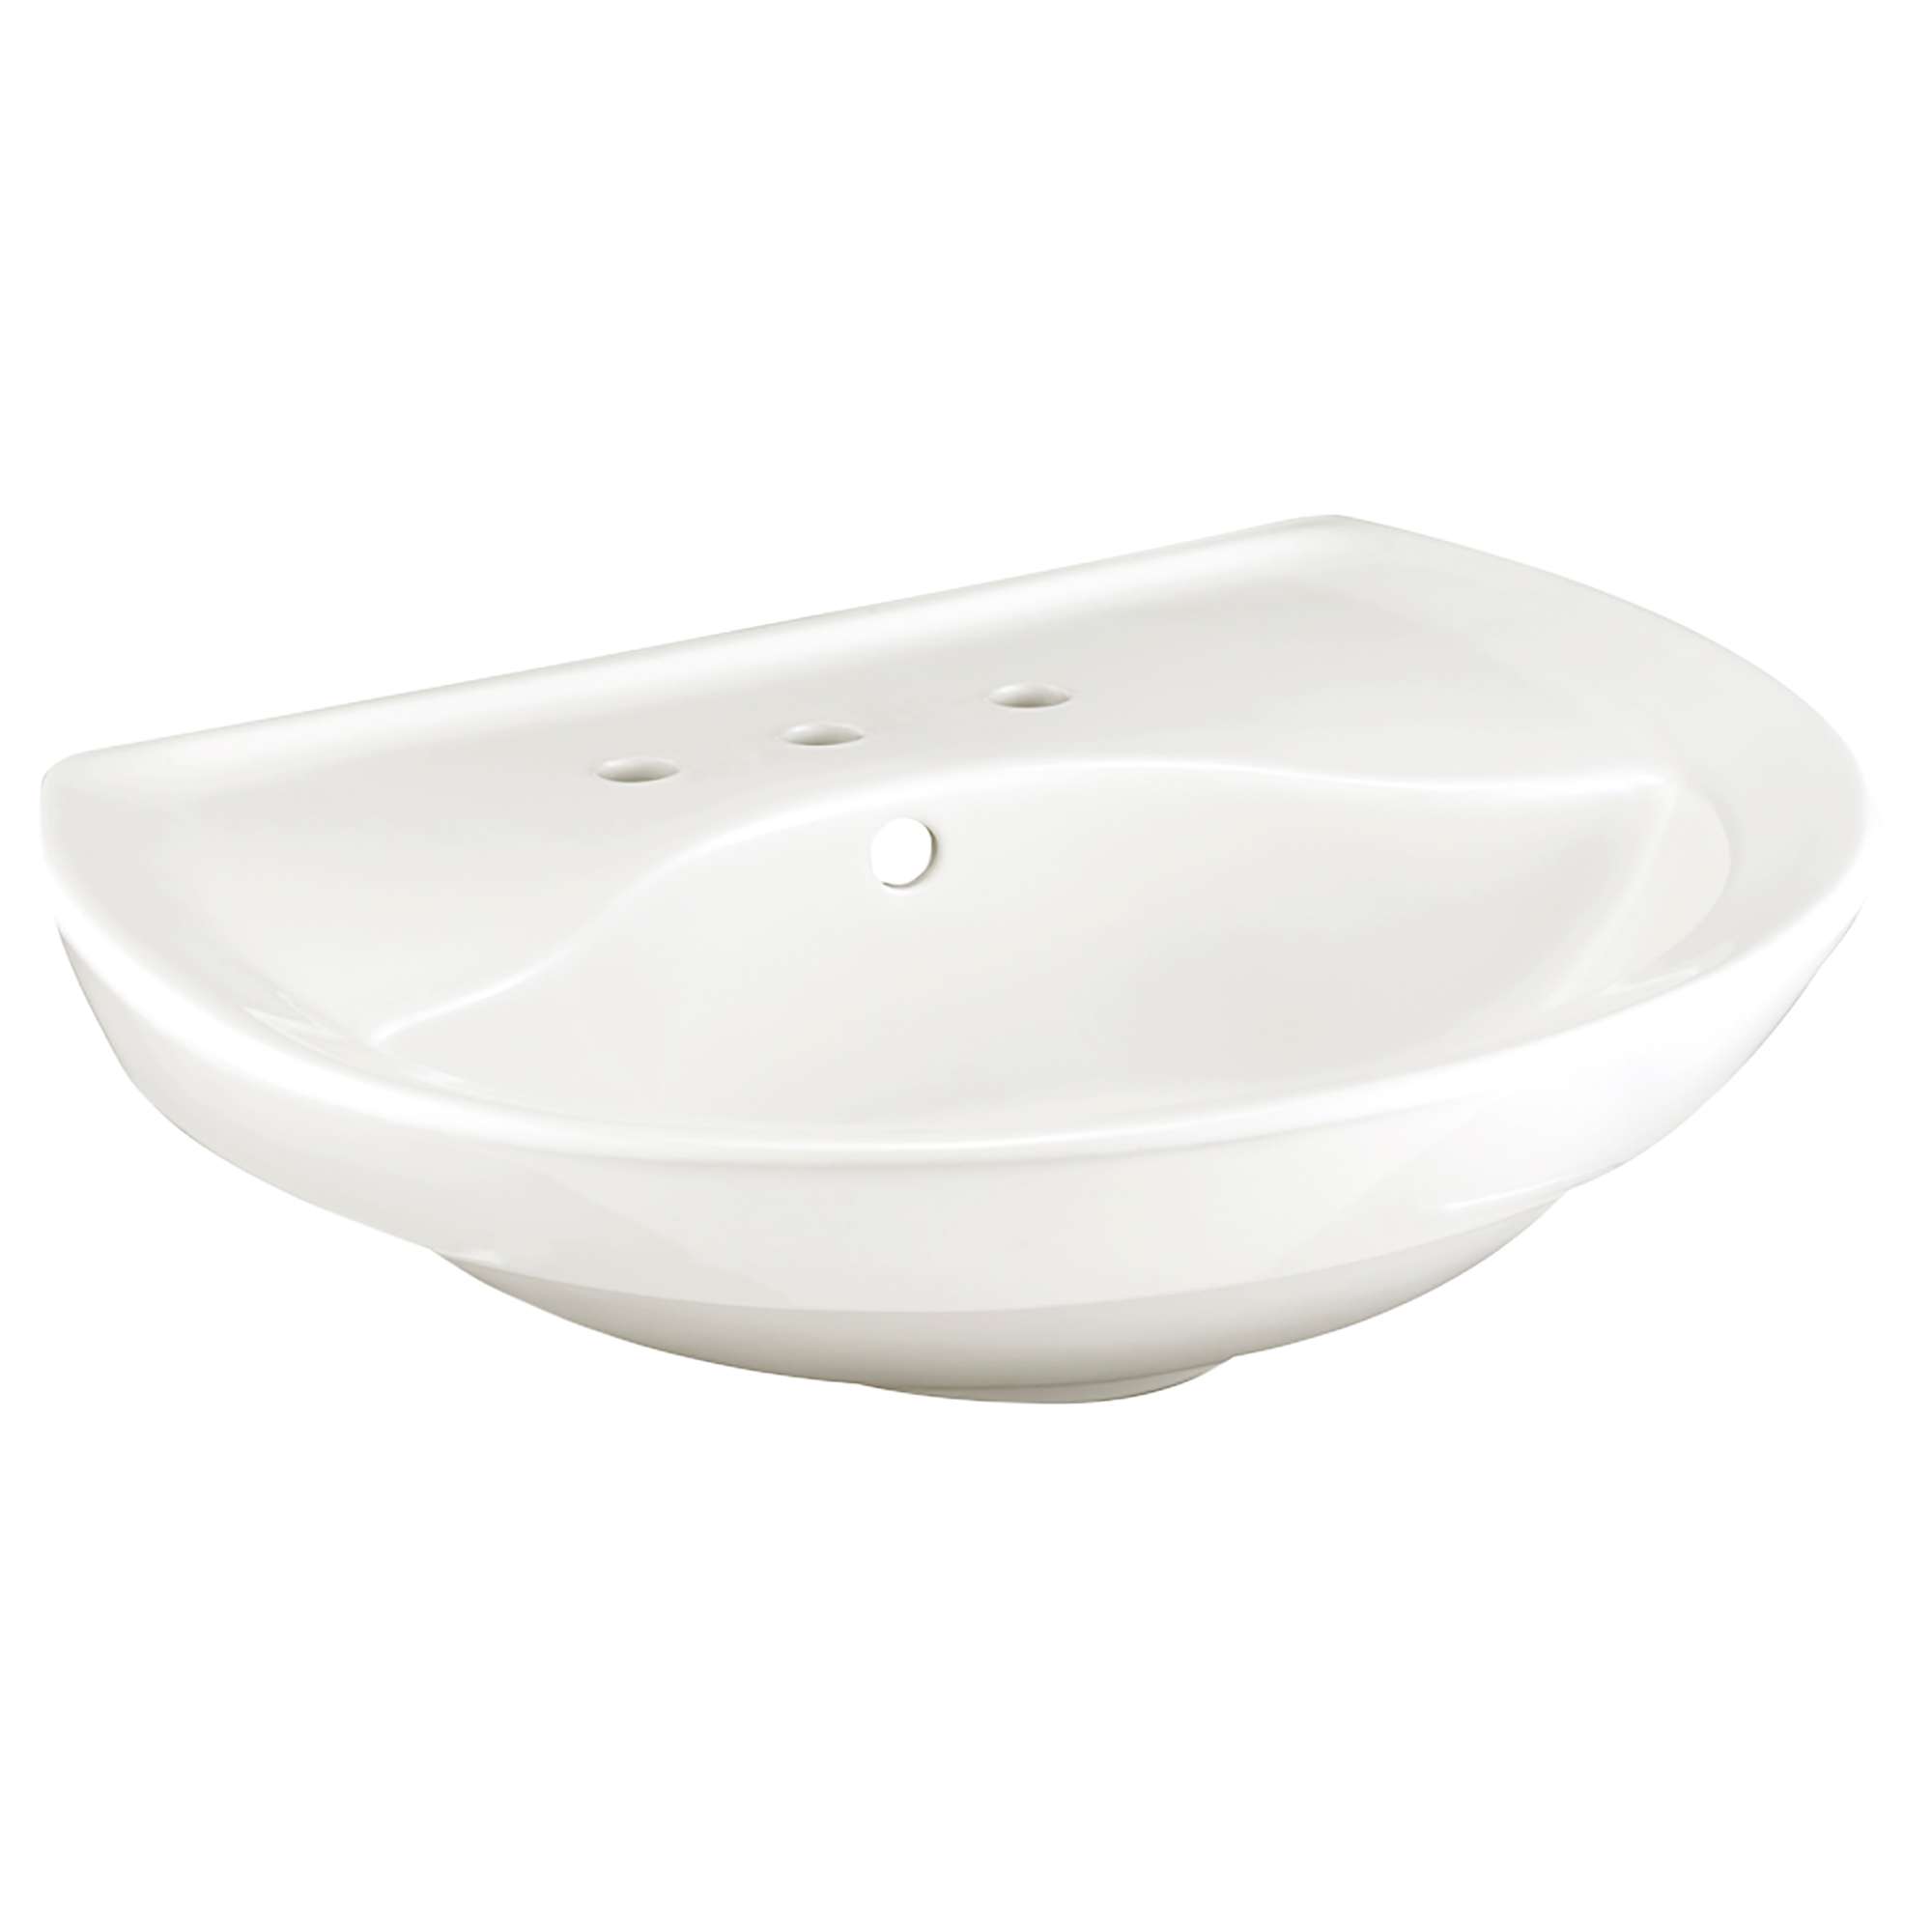 Ravenna® 8-Inch Widespread Pedestal Sink Top